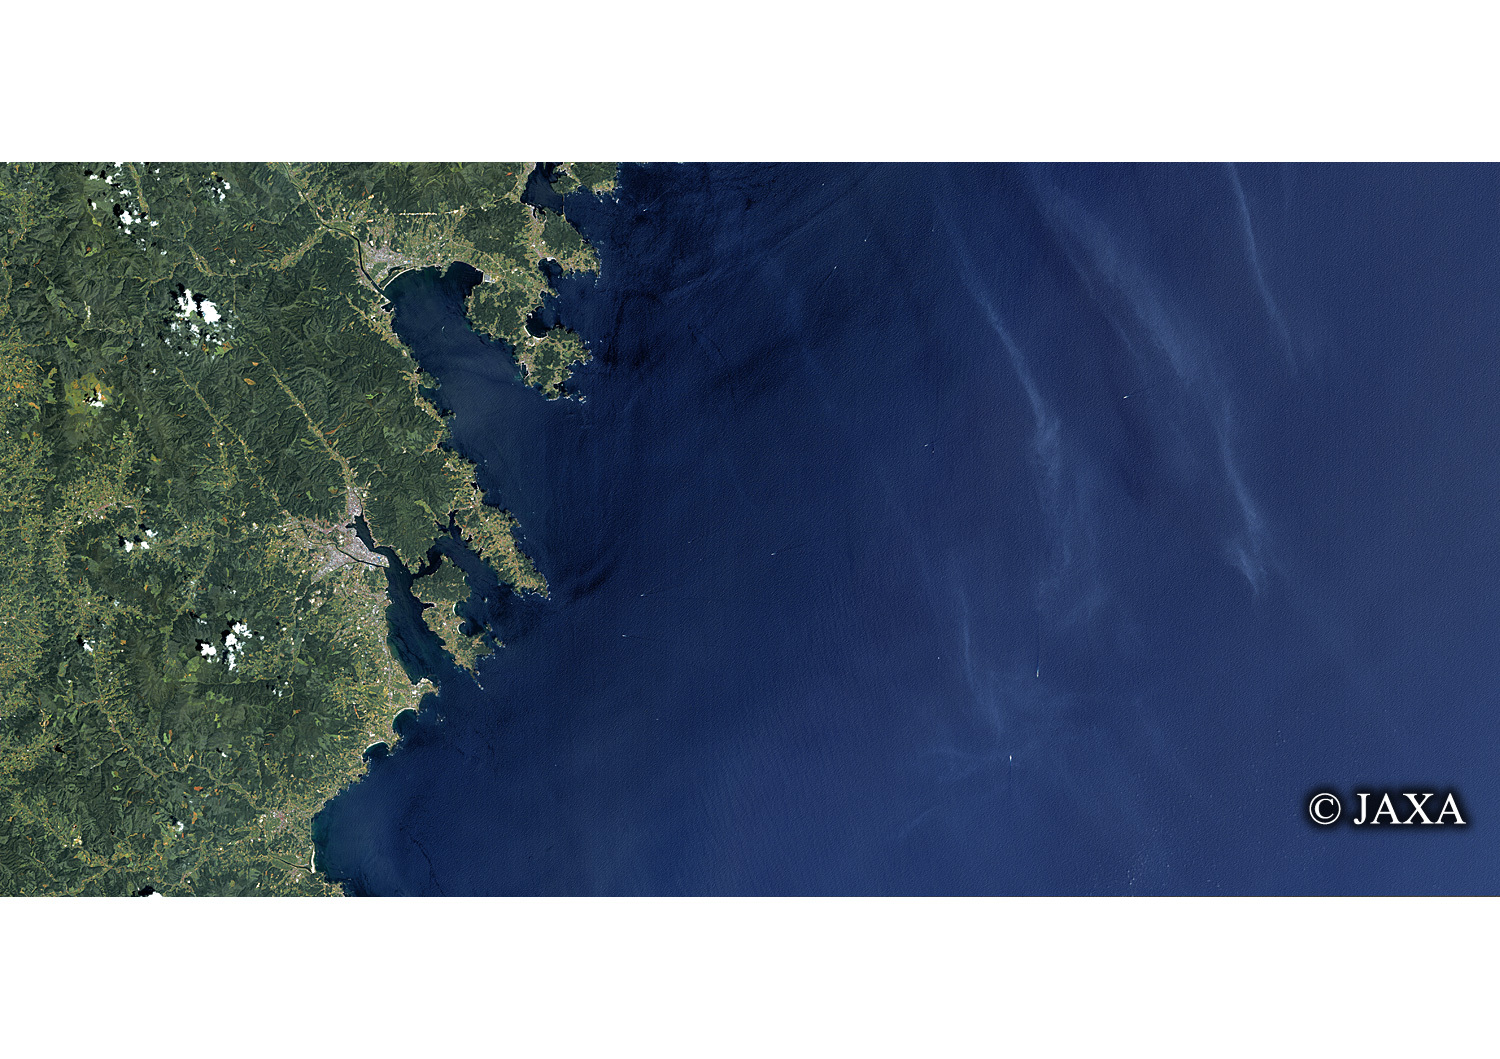 だいちから見た日本の都市 震災前の陸前高田市-気仙沼市:衛星画像